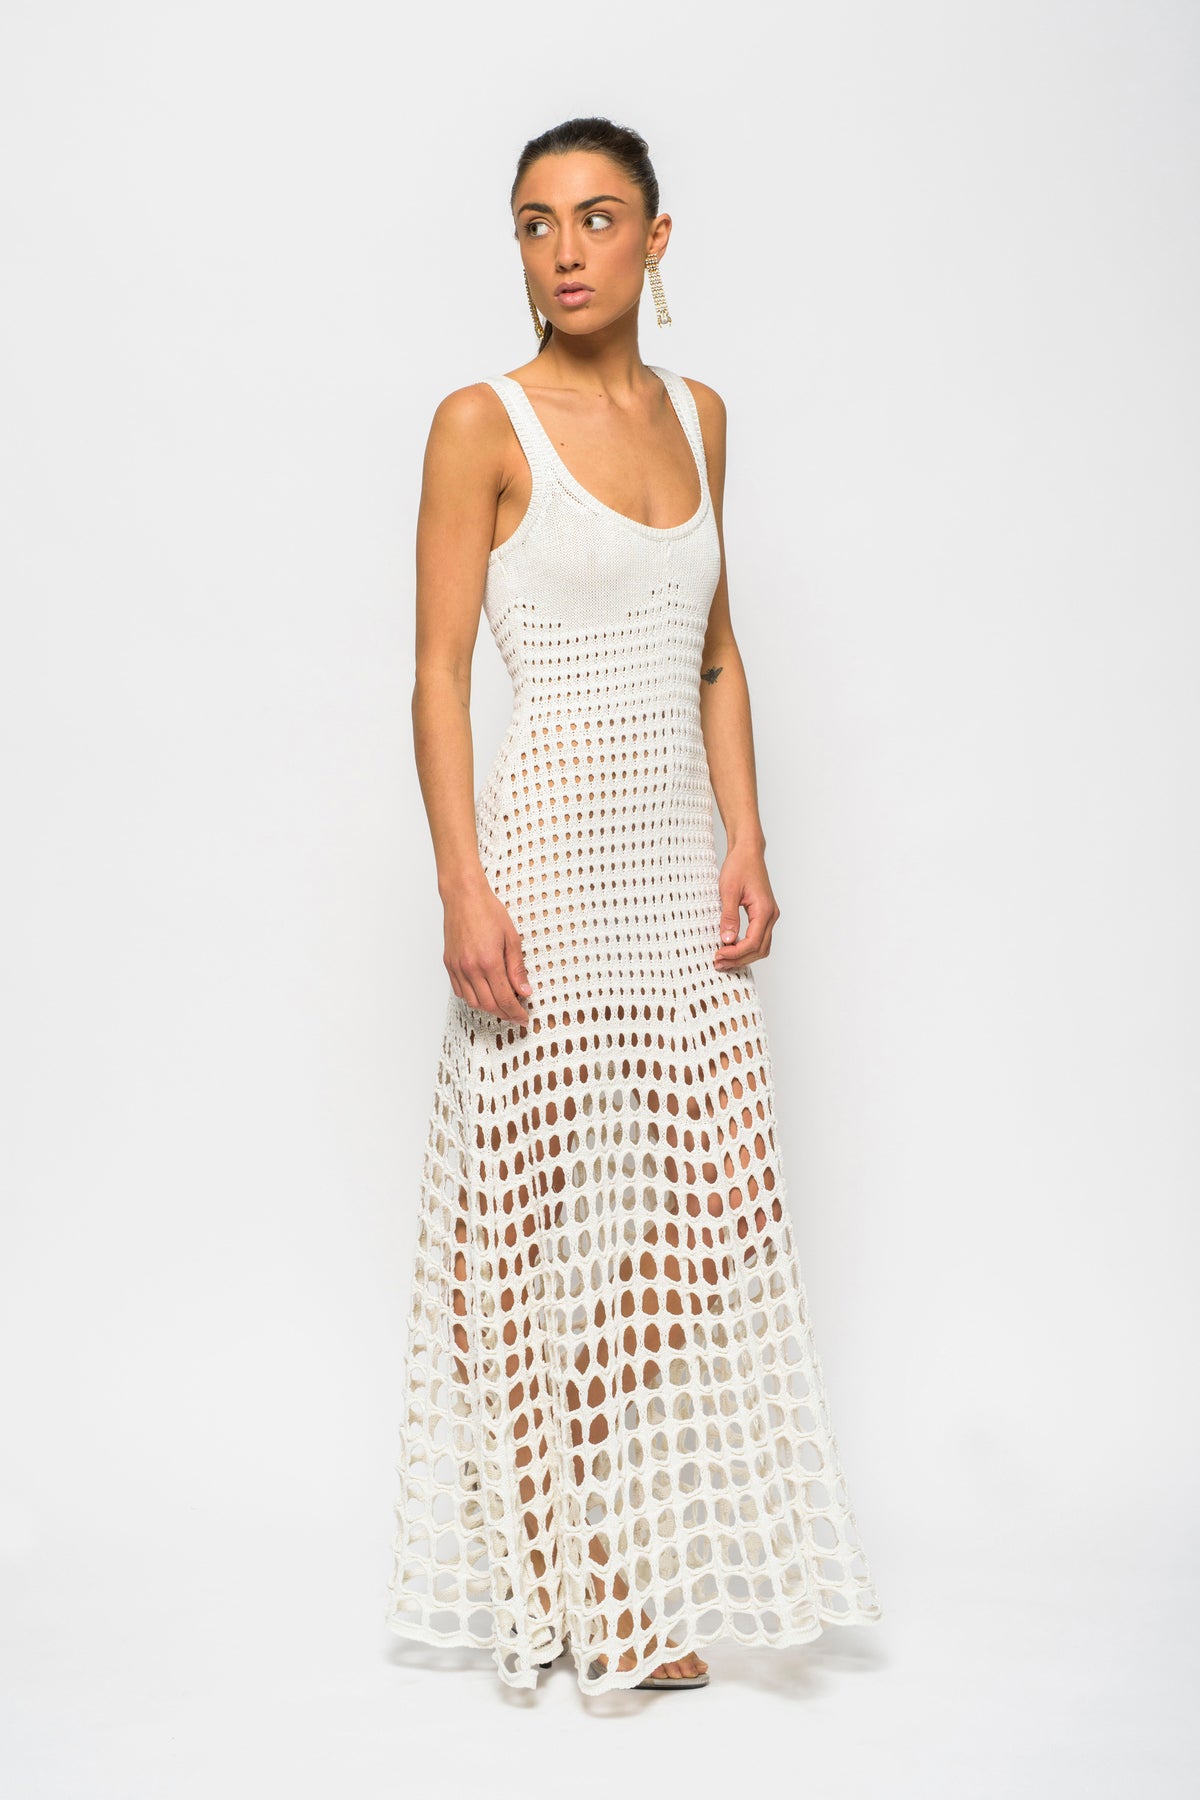 Chloe White Crochet Dress